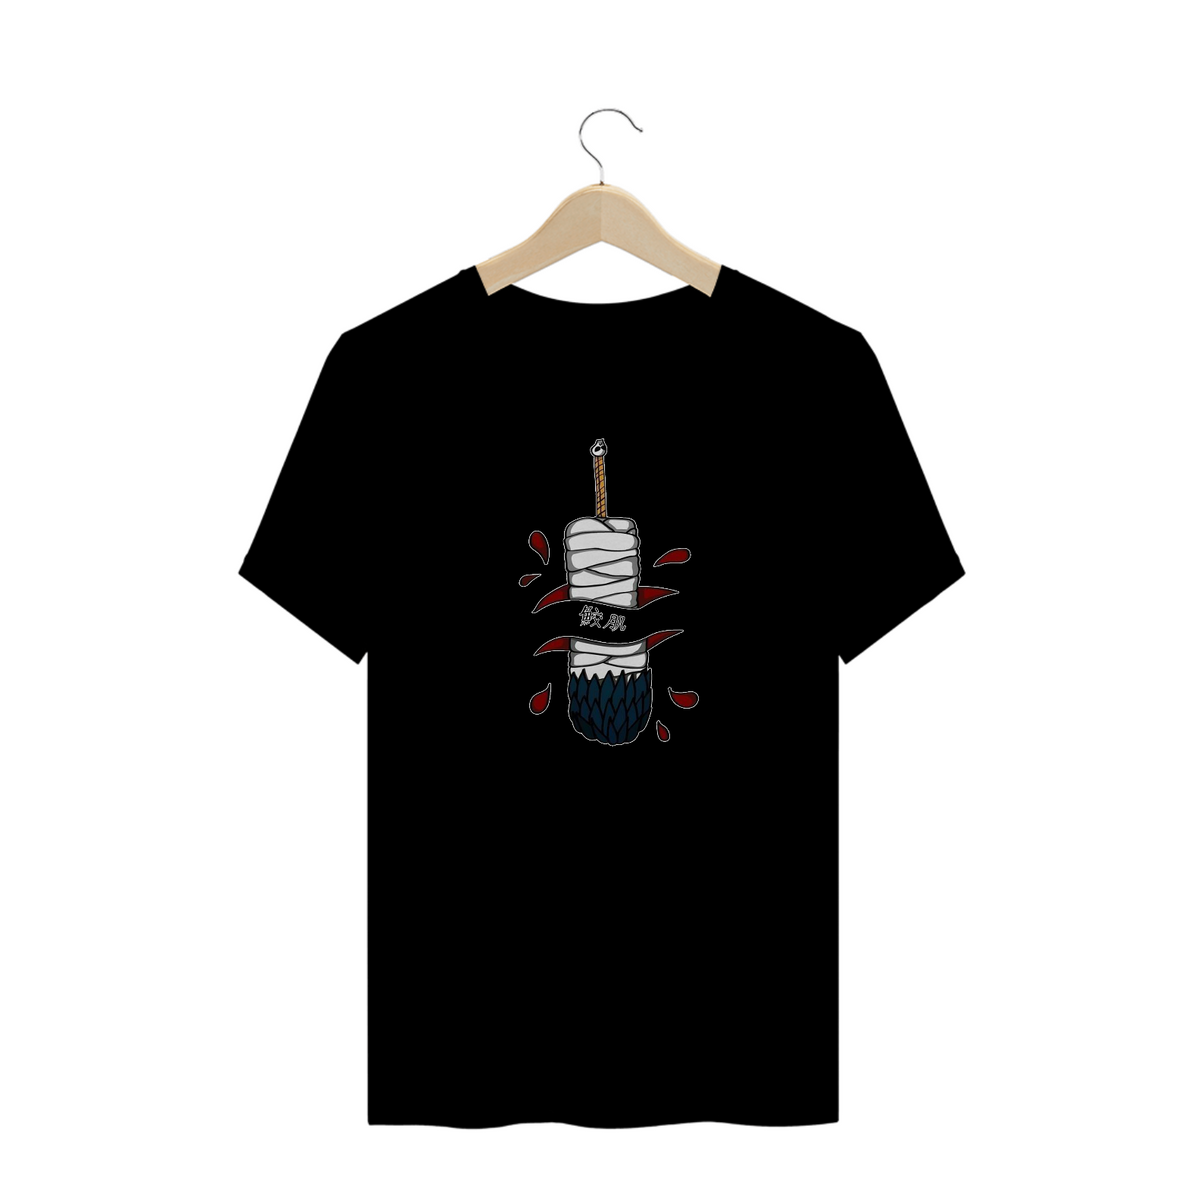 Nome do produto: T-Shirt Espada Kisame